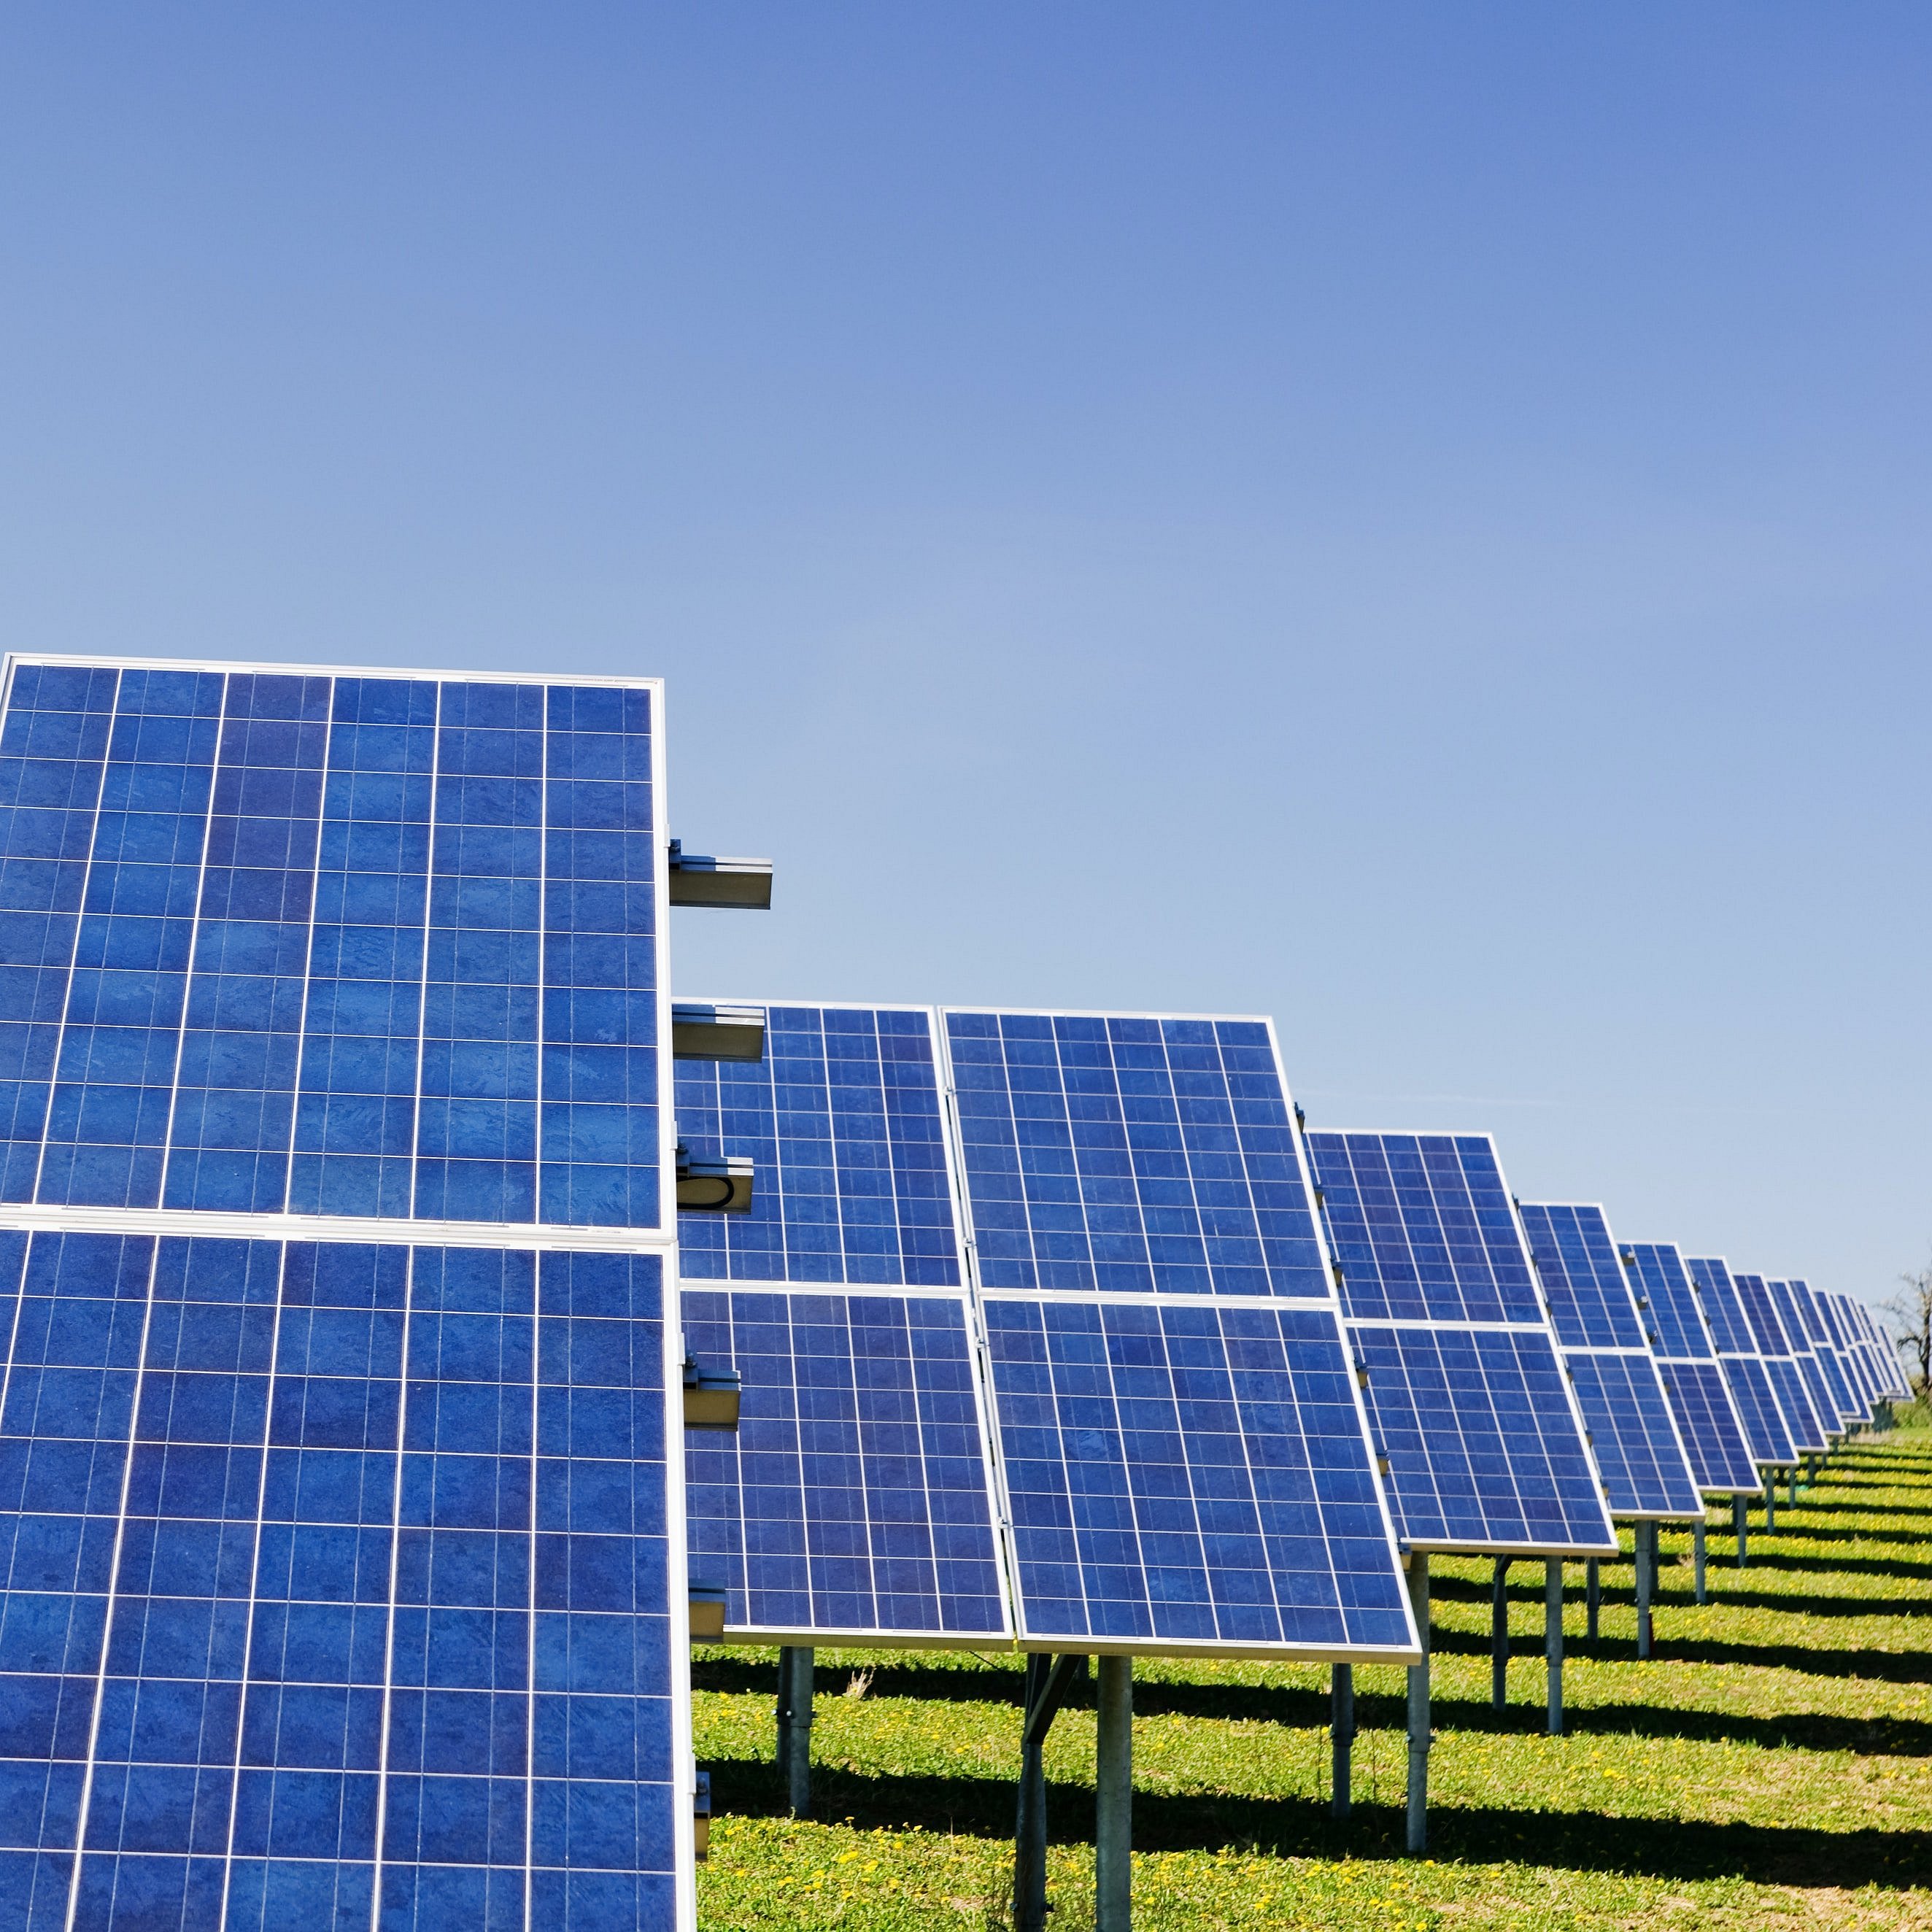 Abgebilet sind viele Solarpanel, die erneuerbare Energien gewinnen.